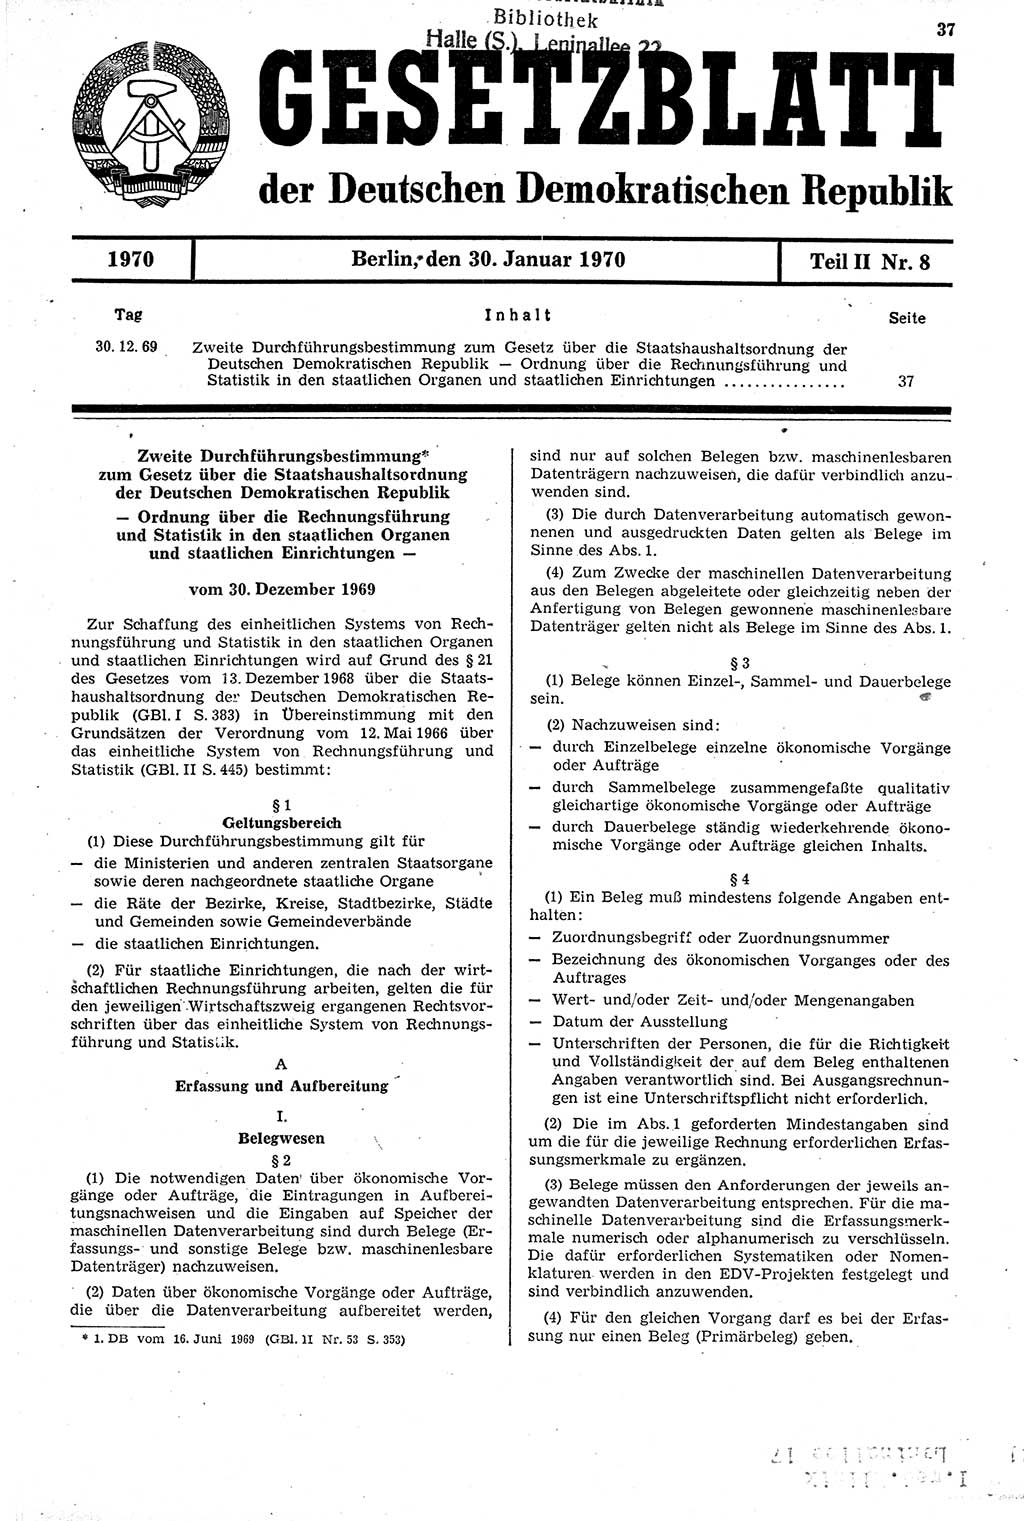 Gesetzblatt (GBl.) der Deutschen Demokratischen Republik (DDR) Teil ⅠⅠ 1970, Seite 37 (GBl. DDR ⅠⅠ 1970, S. 37)